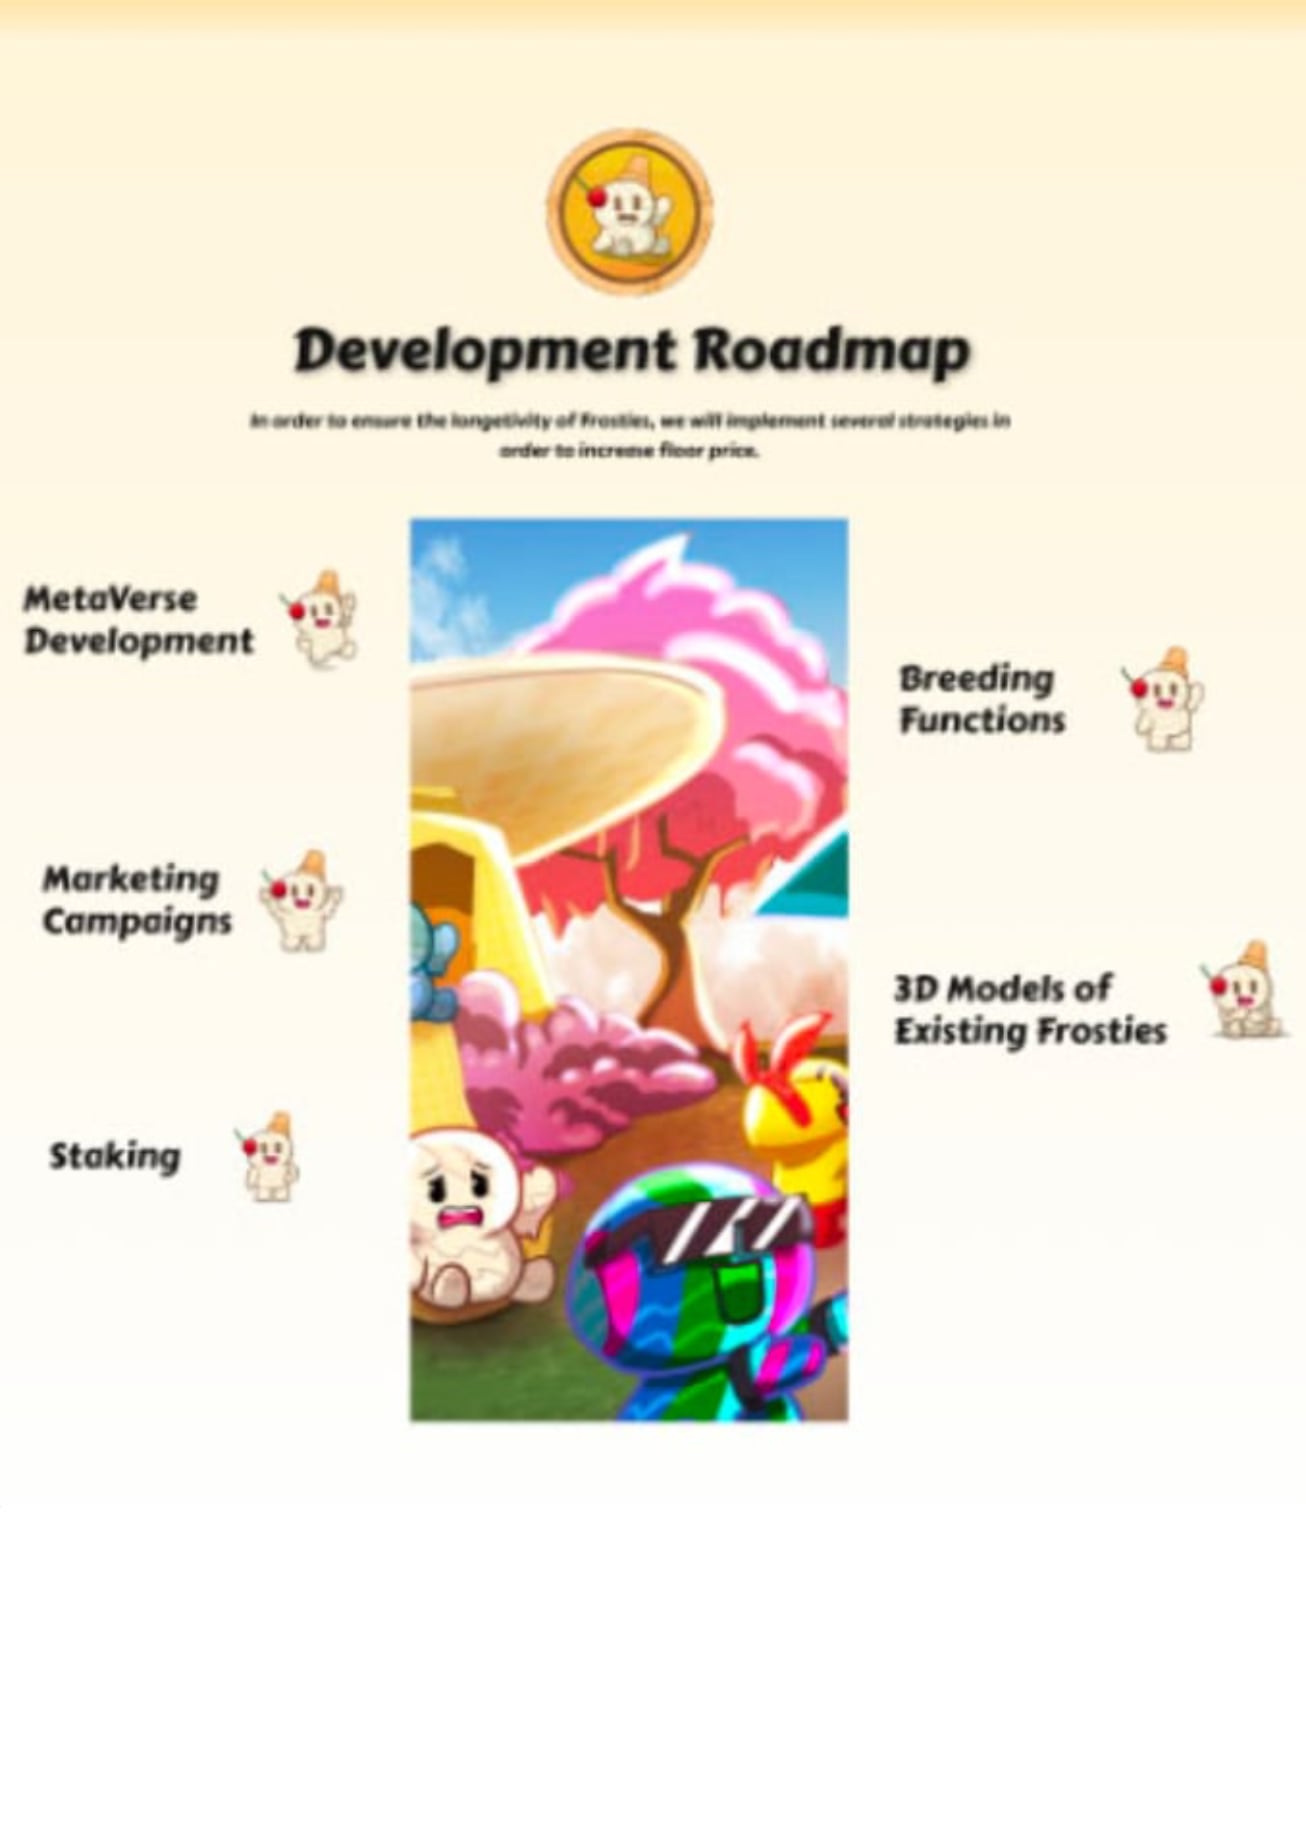 Frostie's Development Roadmap